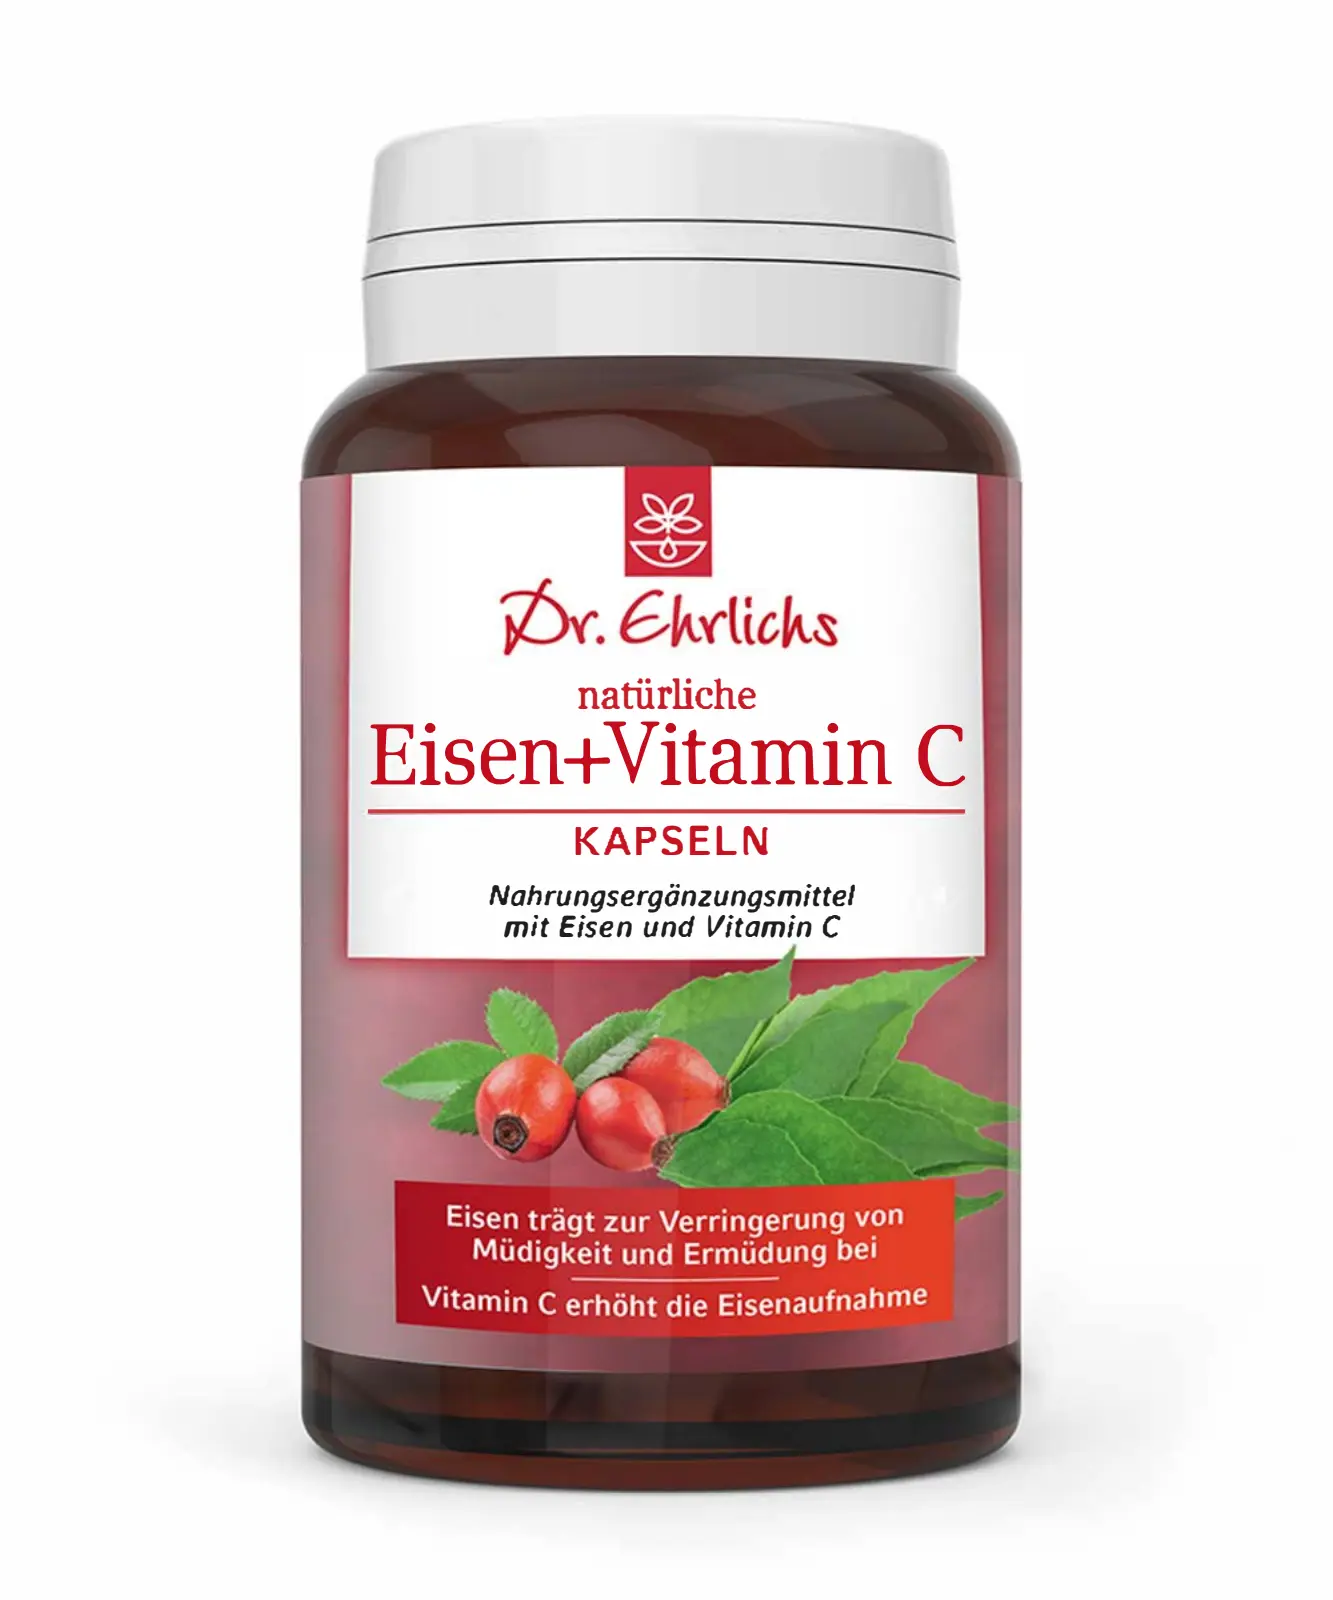 Abbildung Dosen-Frontseite der Dr. Ehrlichs Eisen und Vitamin C Kapseln